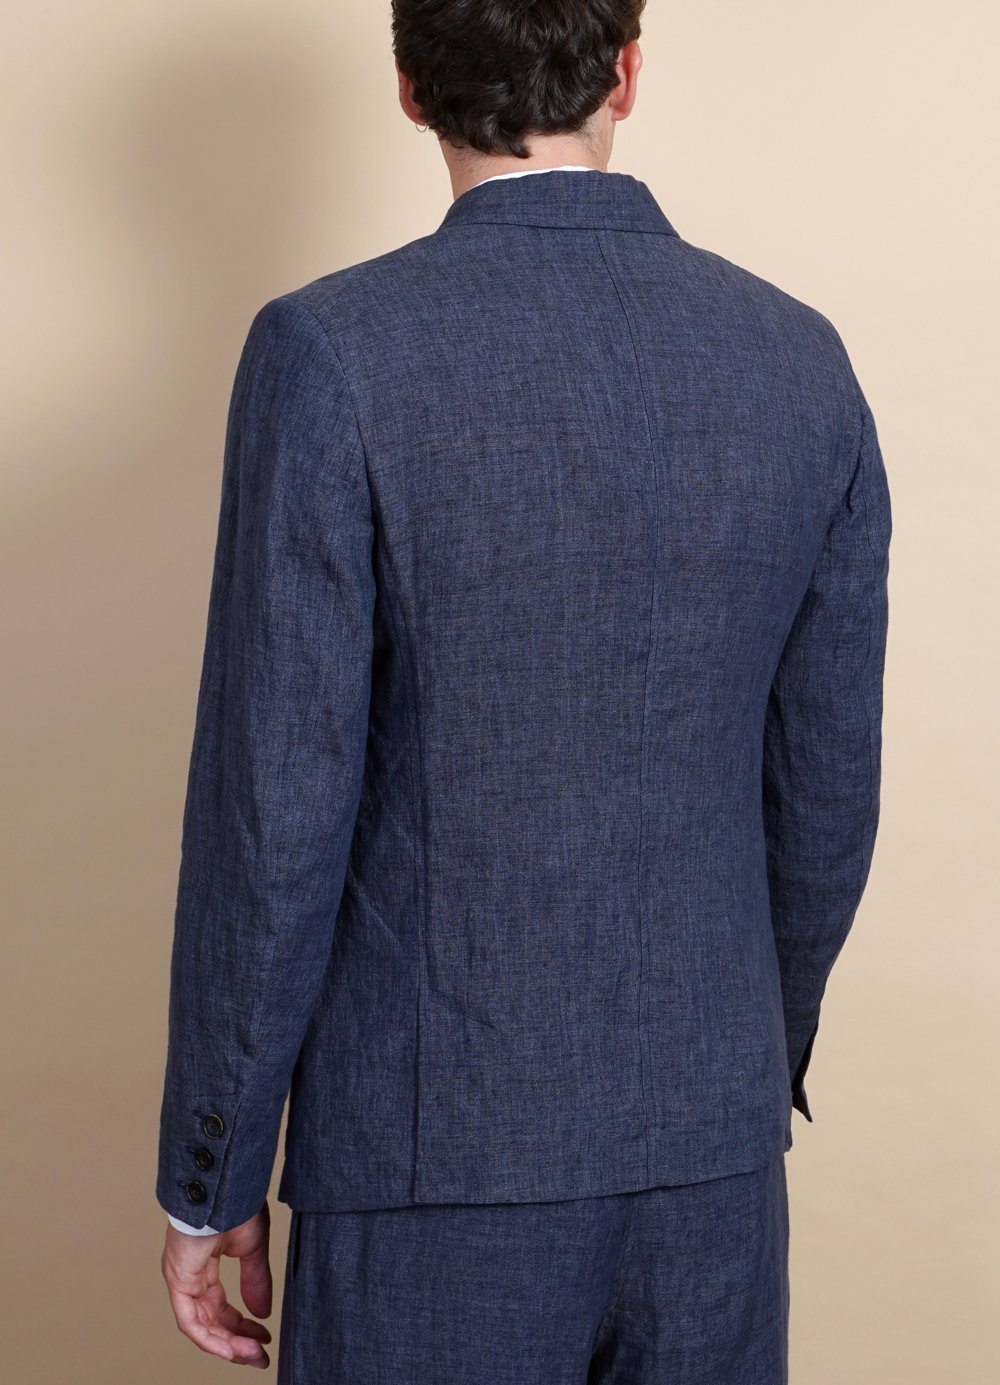 HANSEN GARMENTS - ANKER | Casual Four Button Blazer | Blue Delave - HANSEN Garments